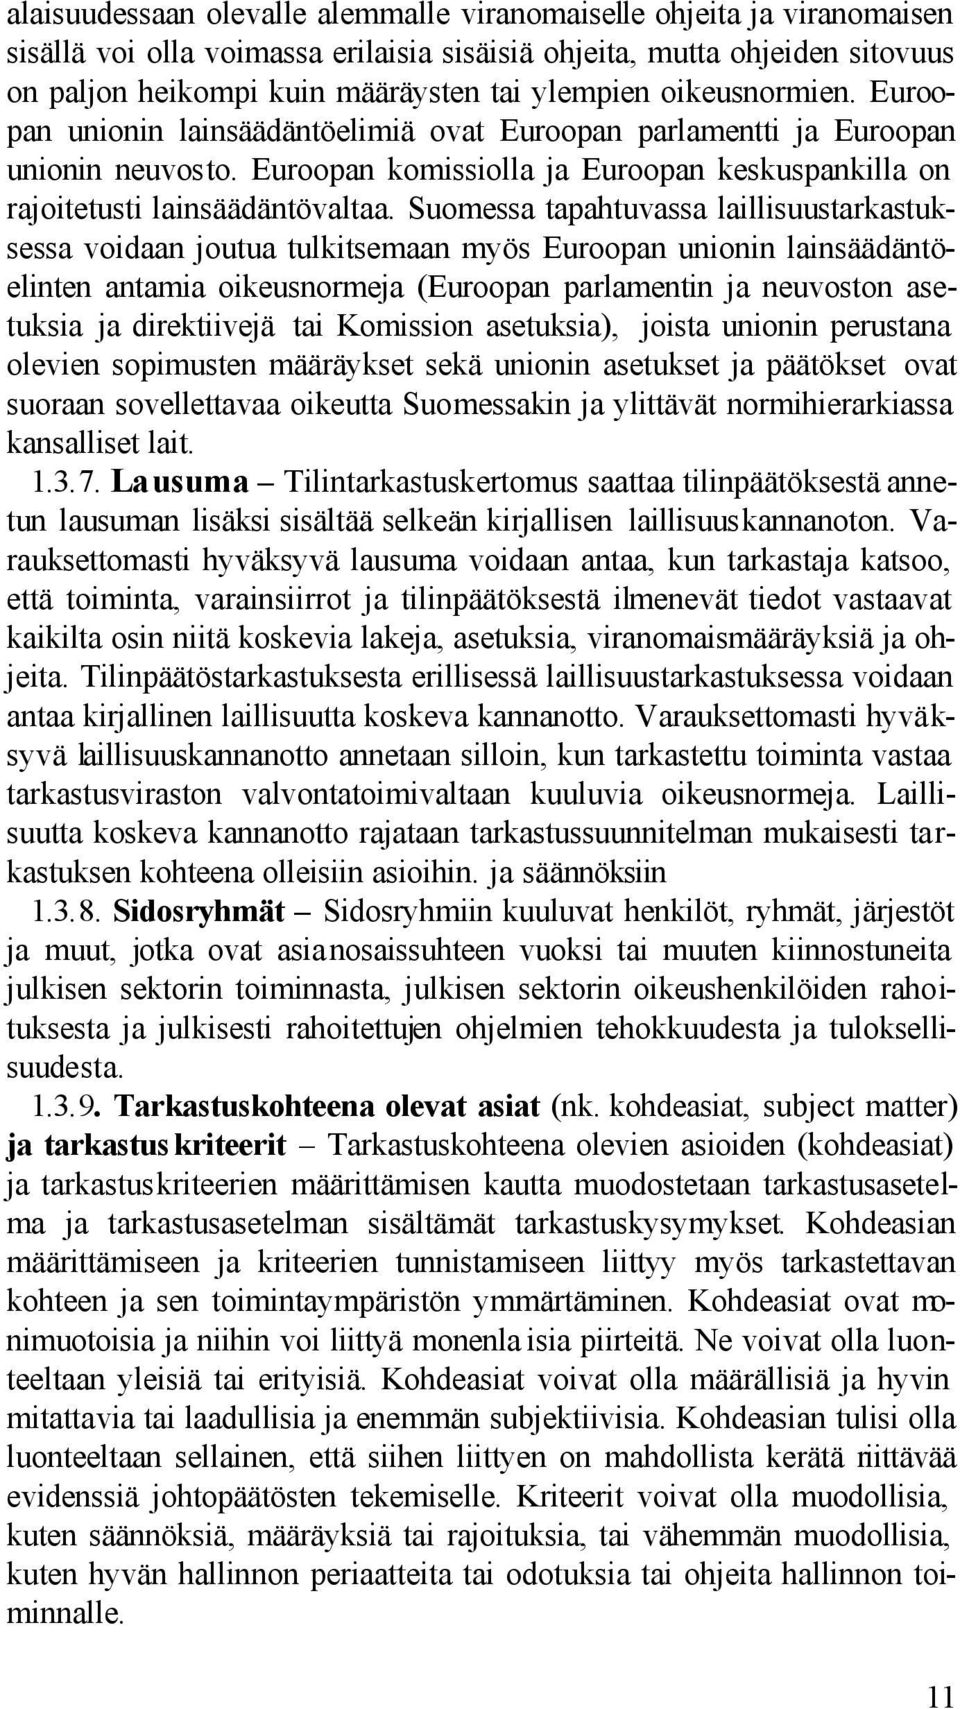 Suomessa tapahtuvassa laillisuustarkastuksessa voidaan joutua tulkitsemaan myös Euroopan unionin lainsäädäntöelinten antamia oikeusnormeja (Euroopan parlamentin ja neuvoston asetuksia ja direktiivejä